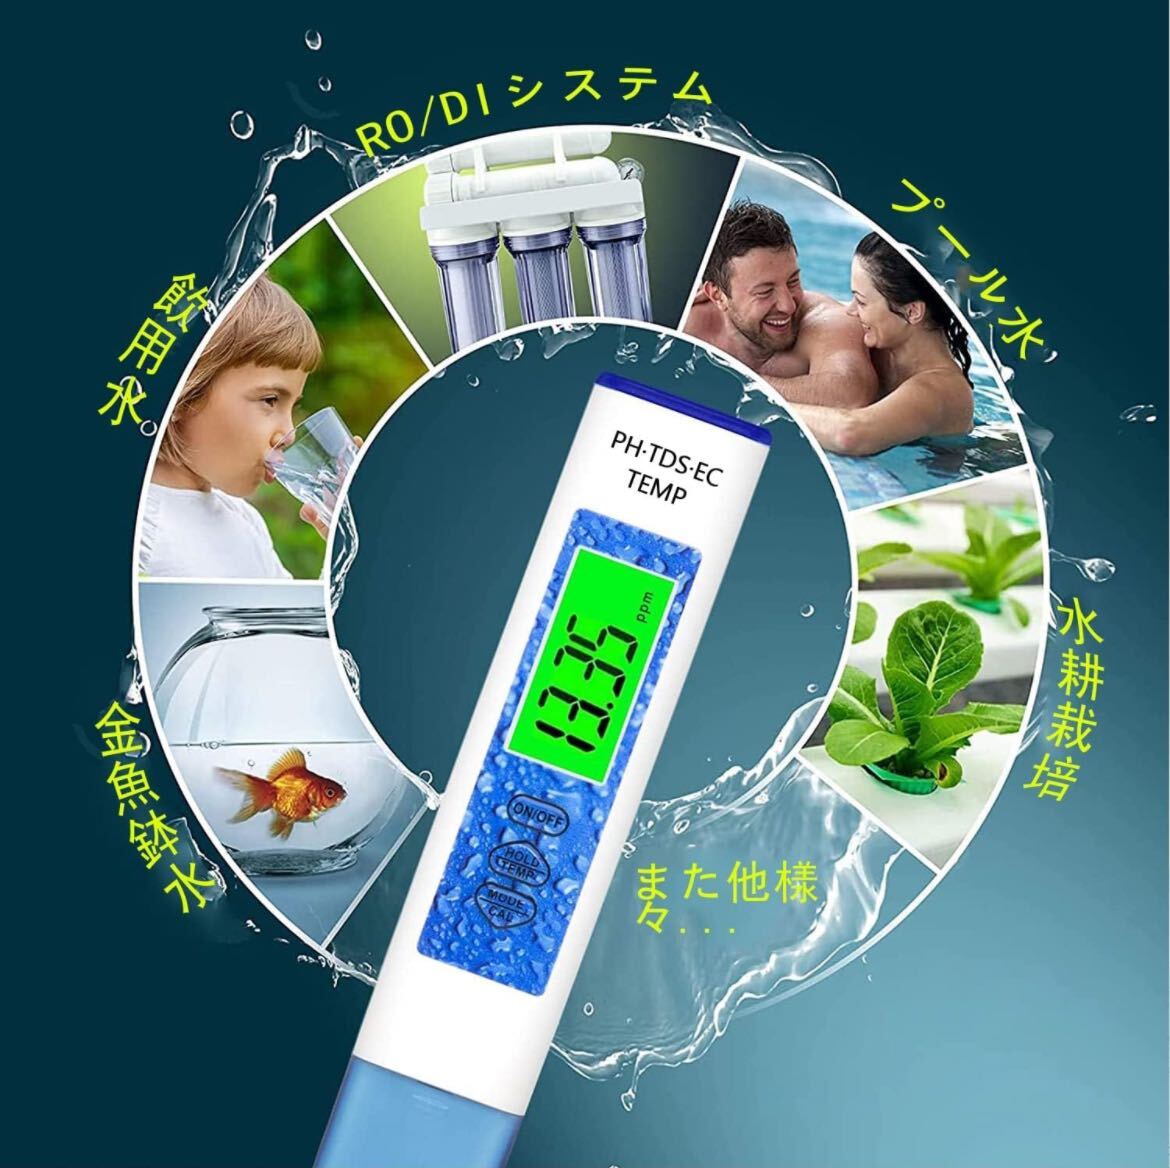  цифровой PH итого 4in1 PH измерительный прибор PH измерительный прибор TDS EC измерительный прибор прибор для проверки качества воды авторучка type качество воды инспекция комплект японский язык инструкция голубой 